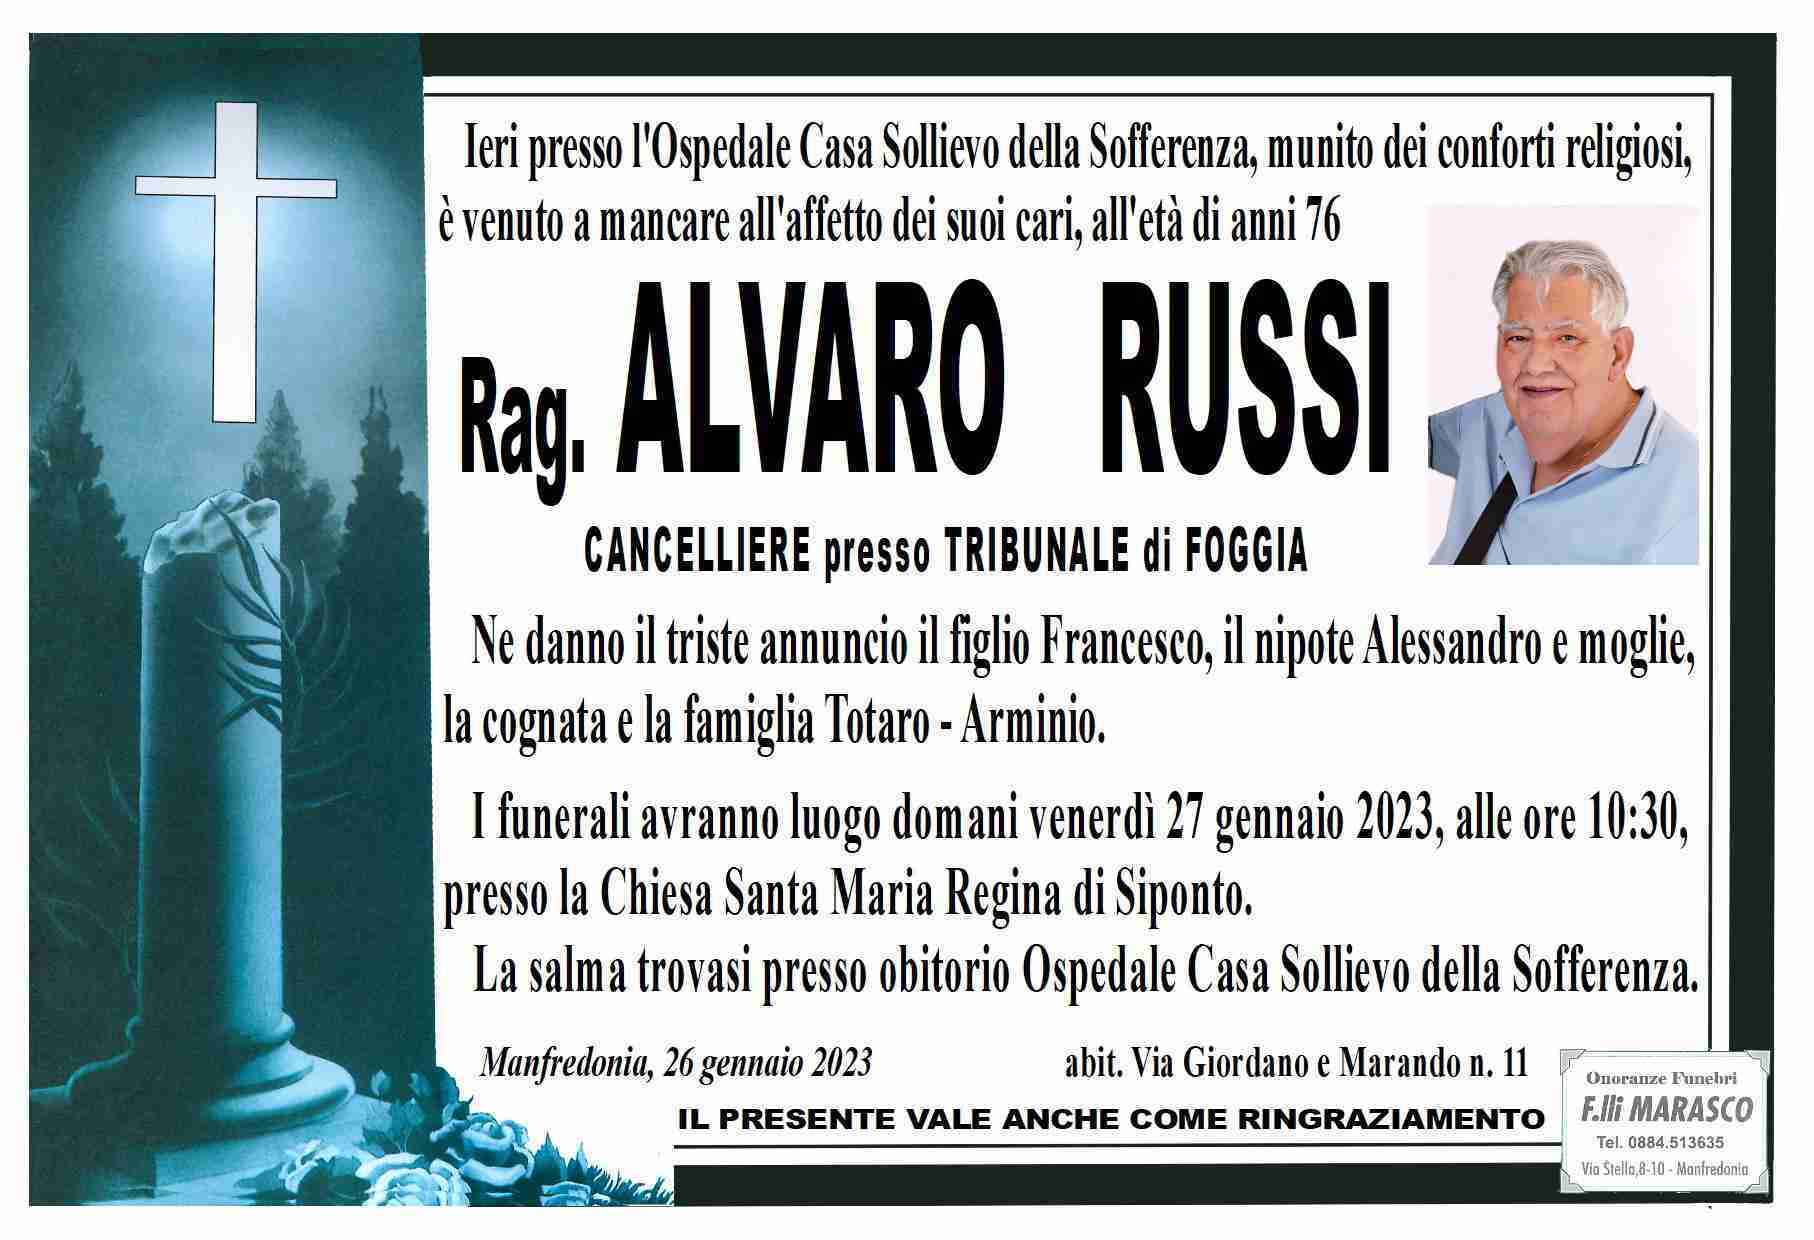 Alvaro Russi